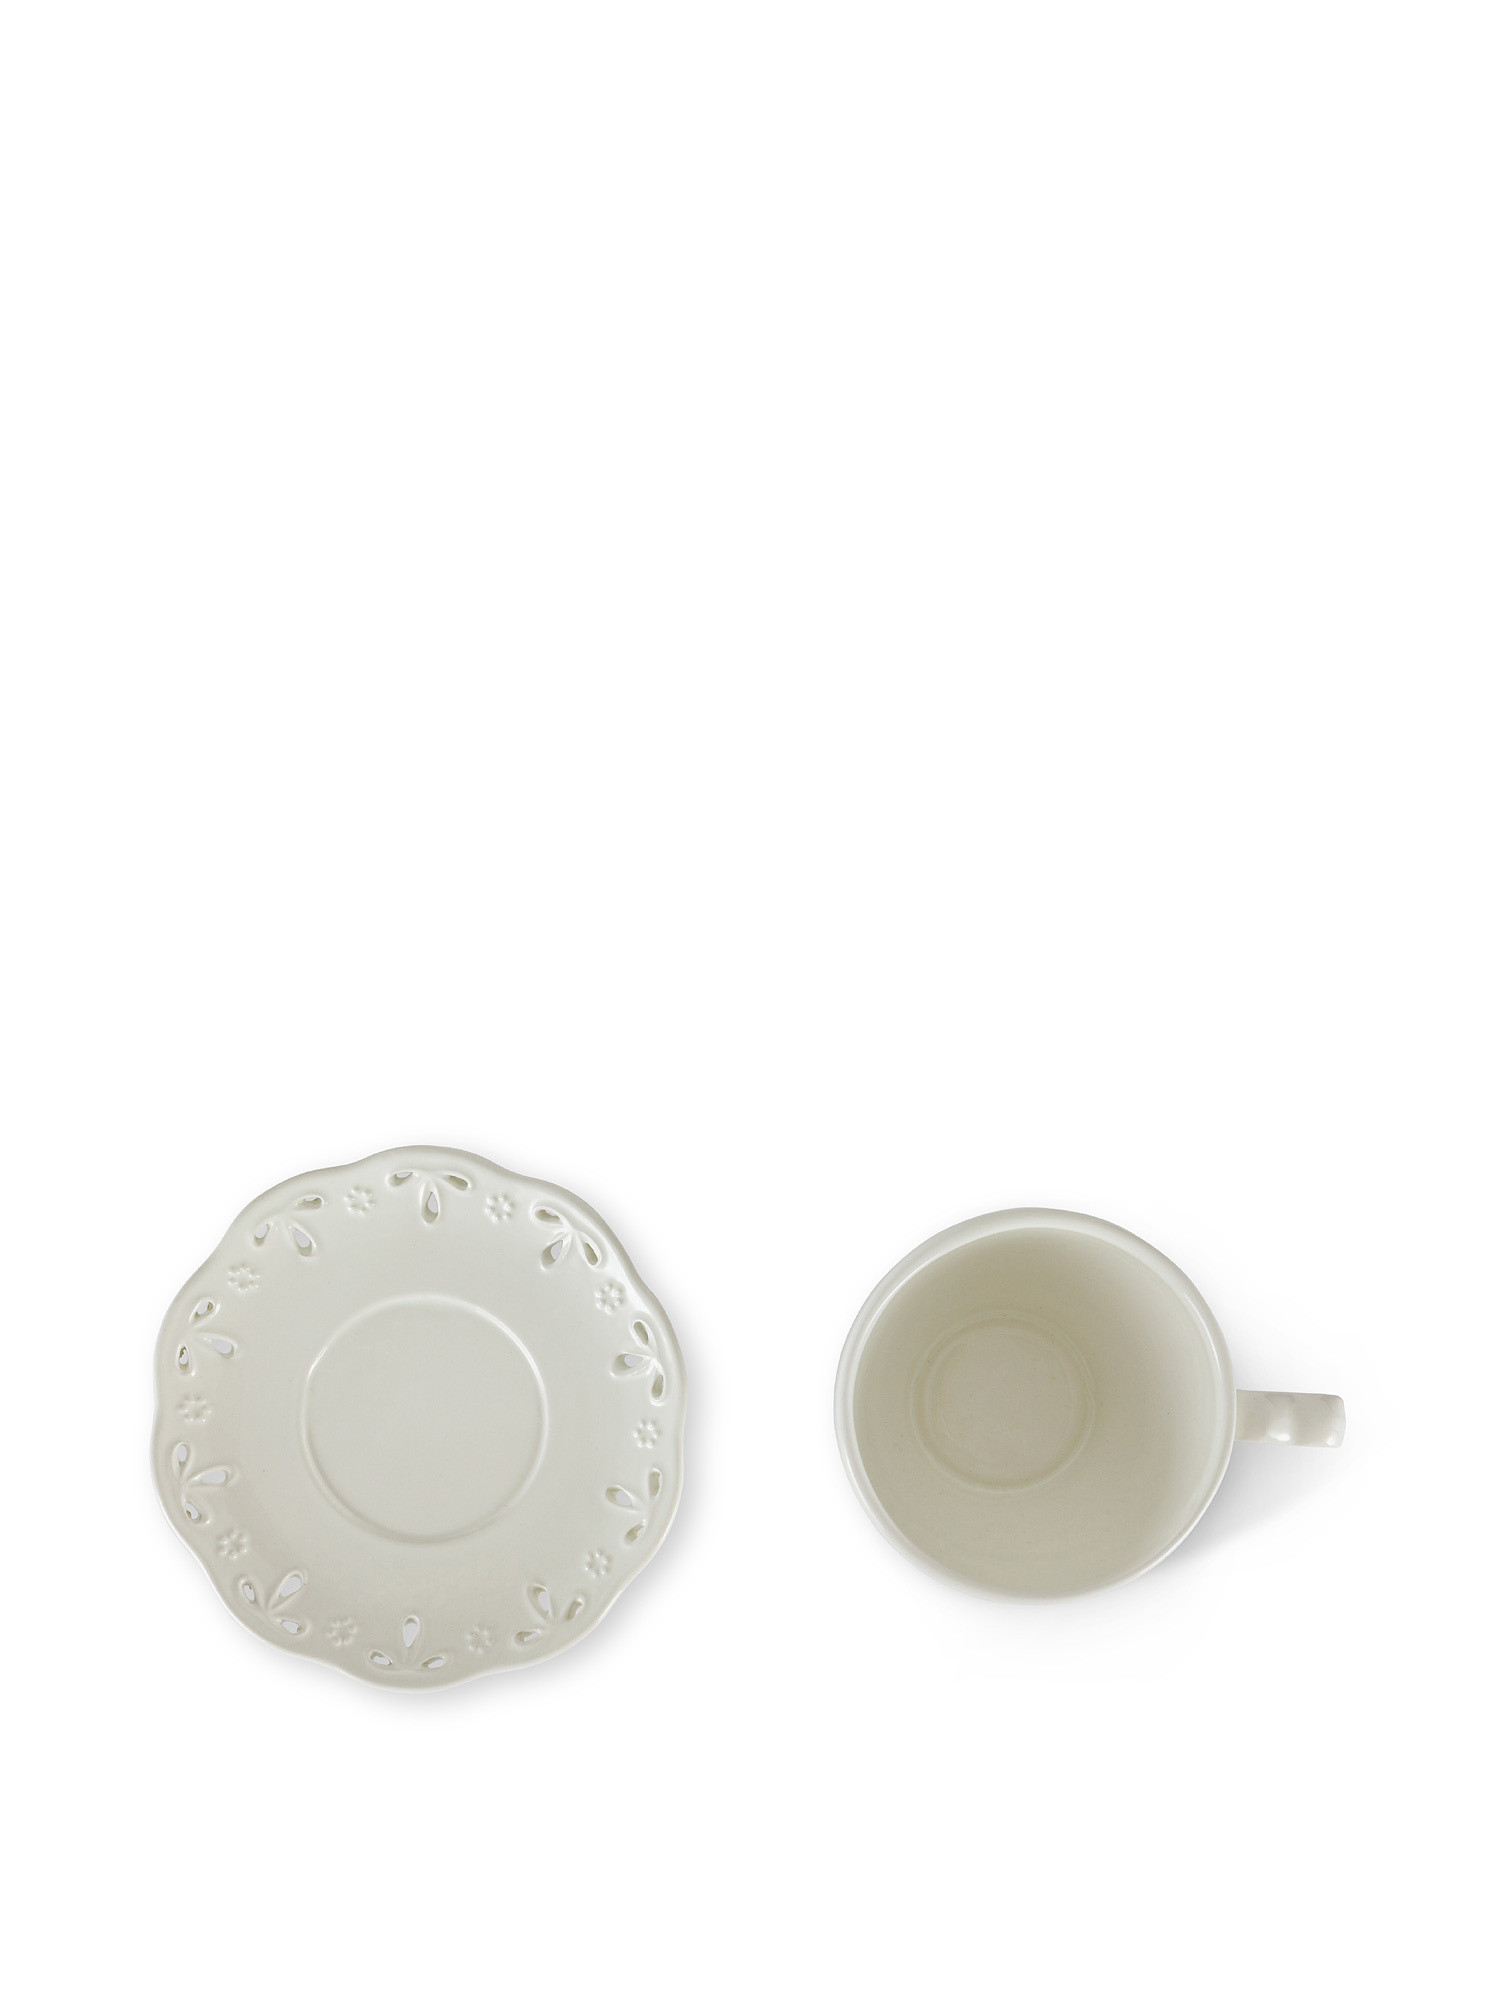 Tazza da tè ceramica traforata, Bianco, large